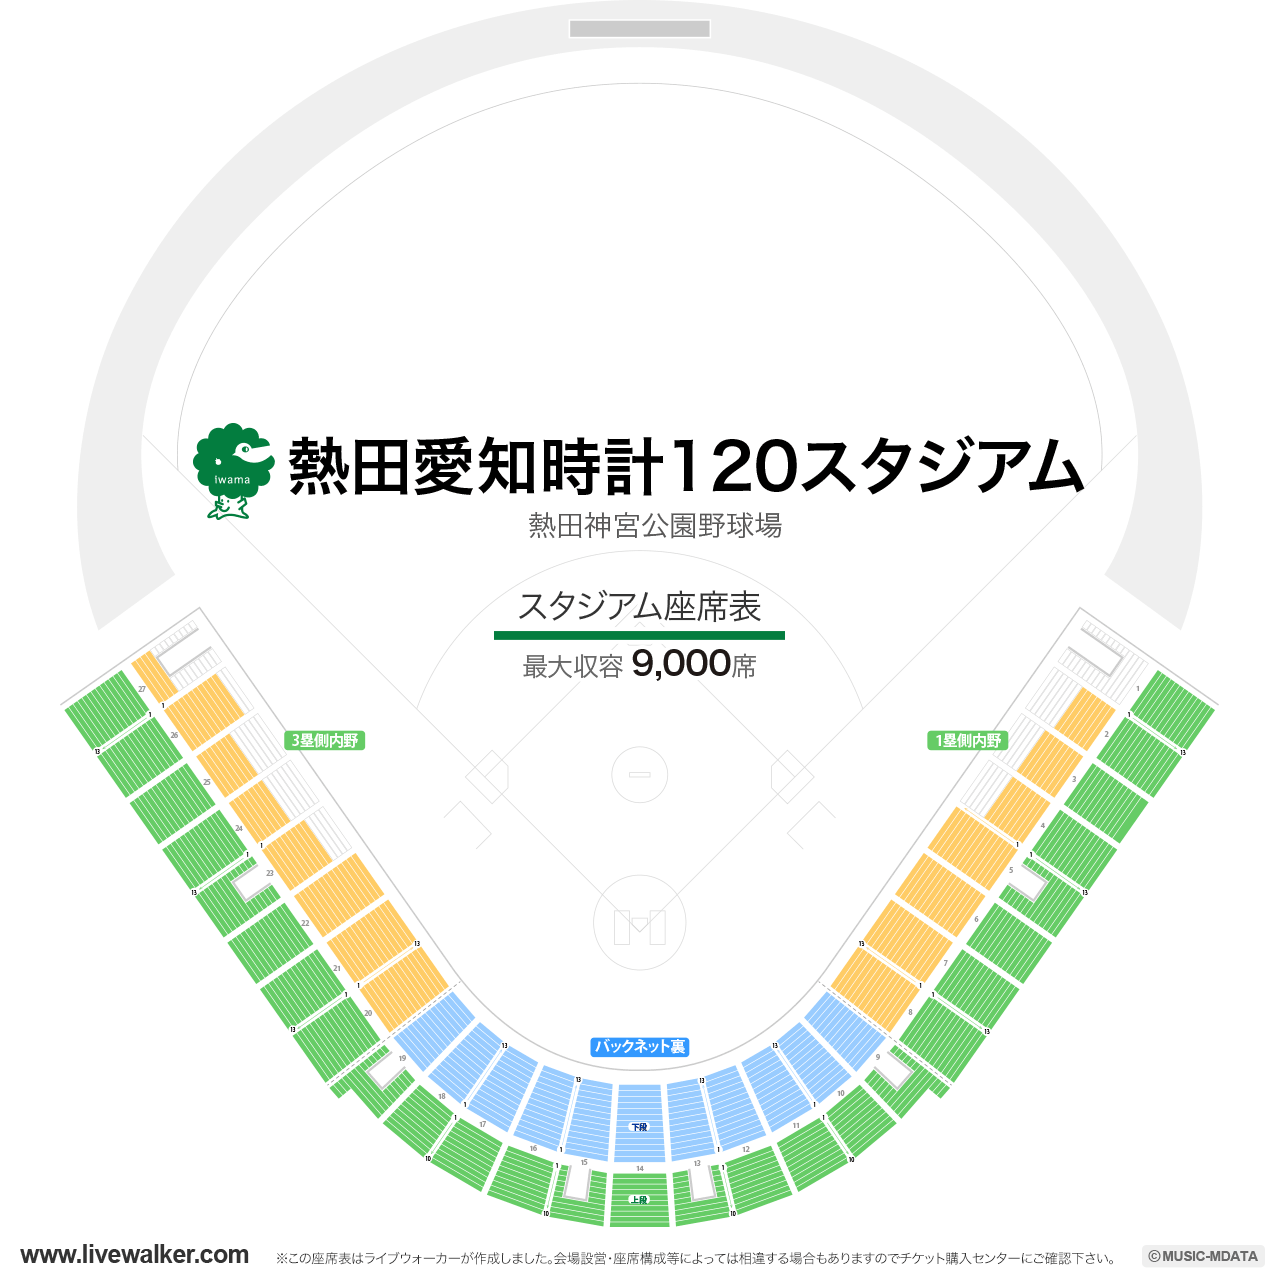 熱田愛知時計120スタジアムの座席表